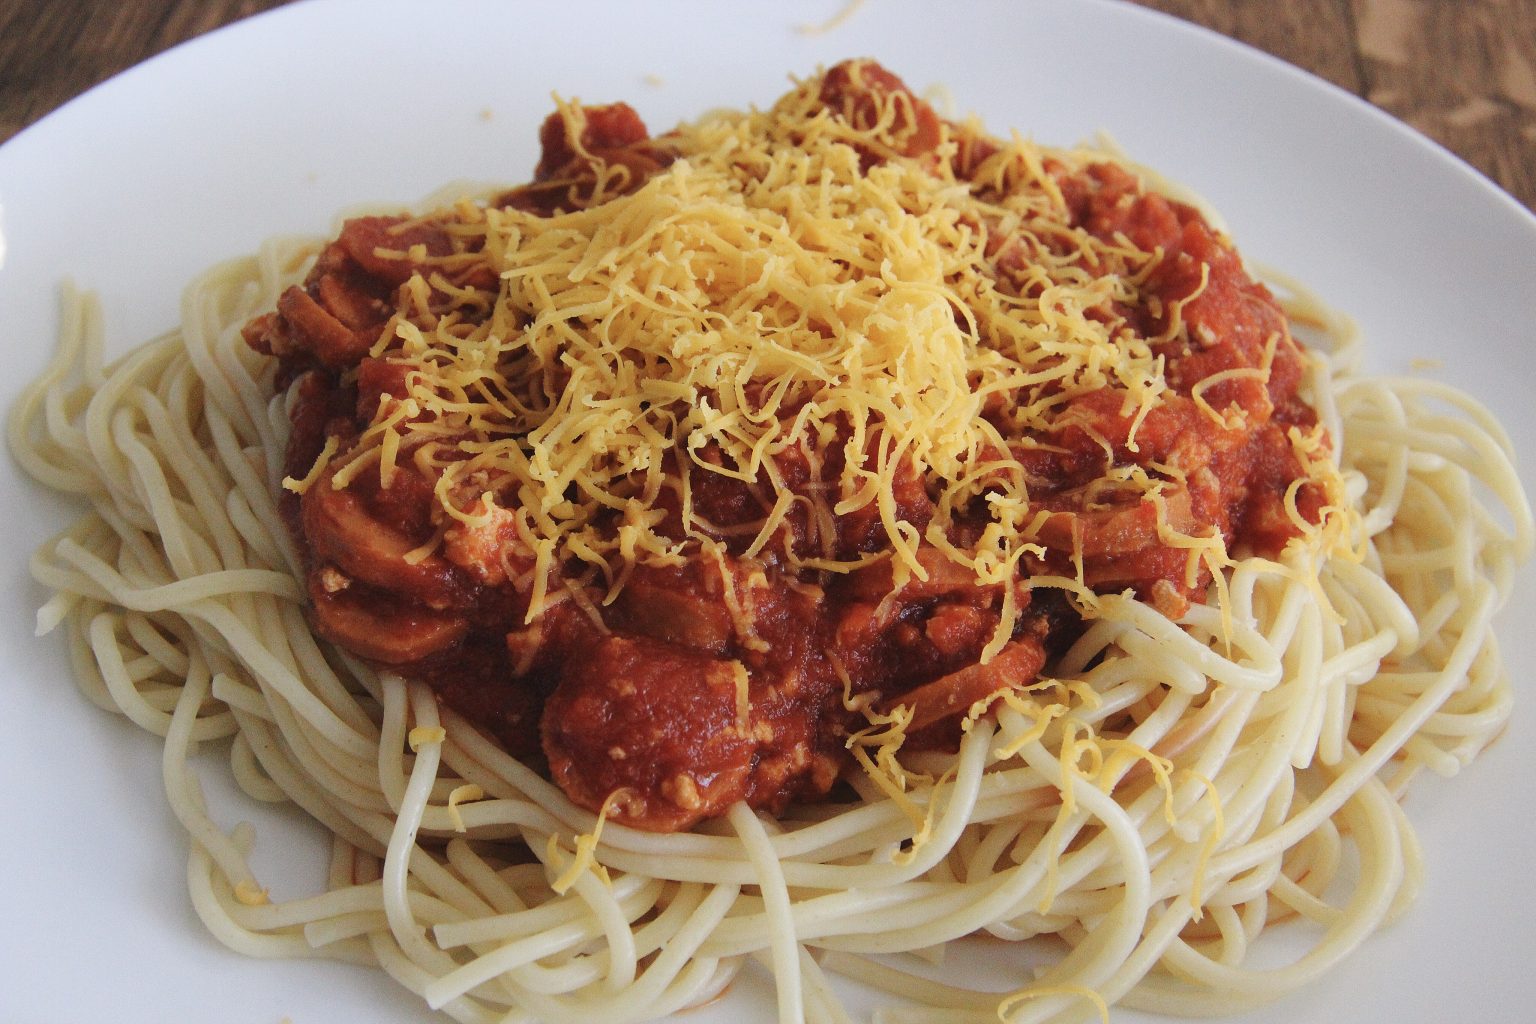 Vegan Filipinx-style spaghetti